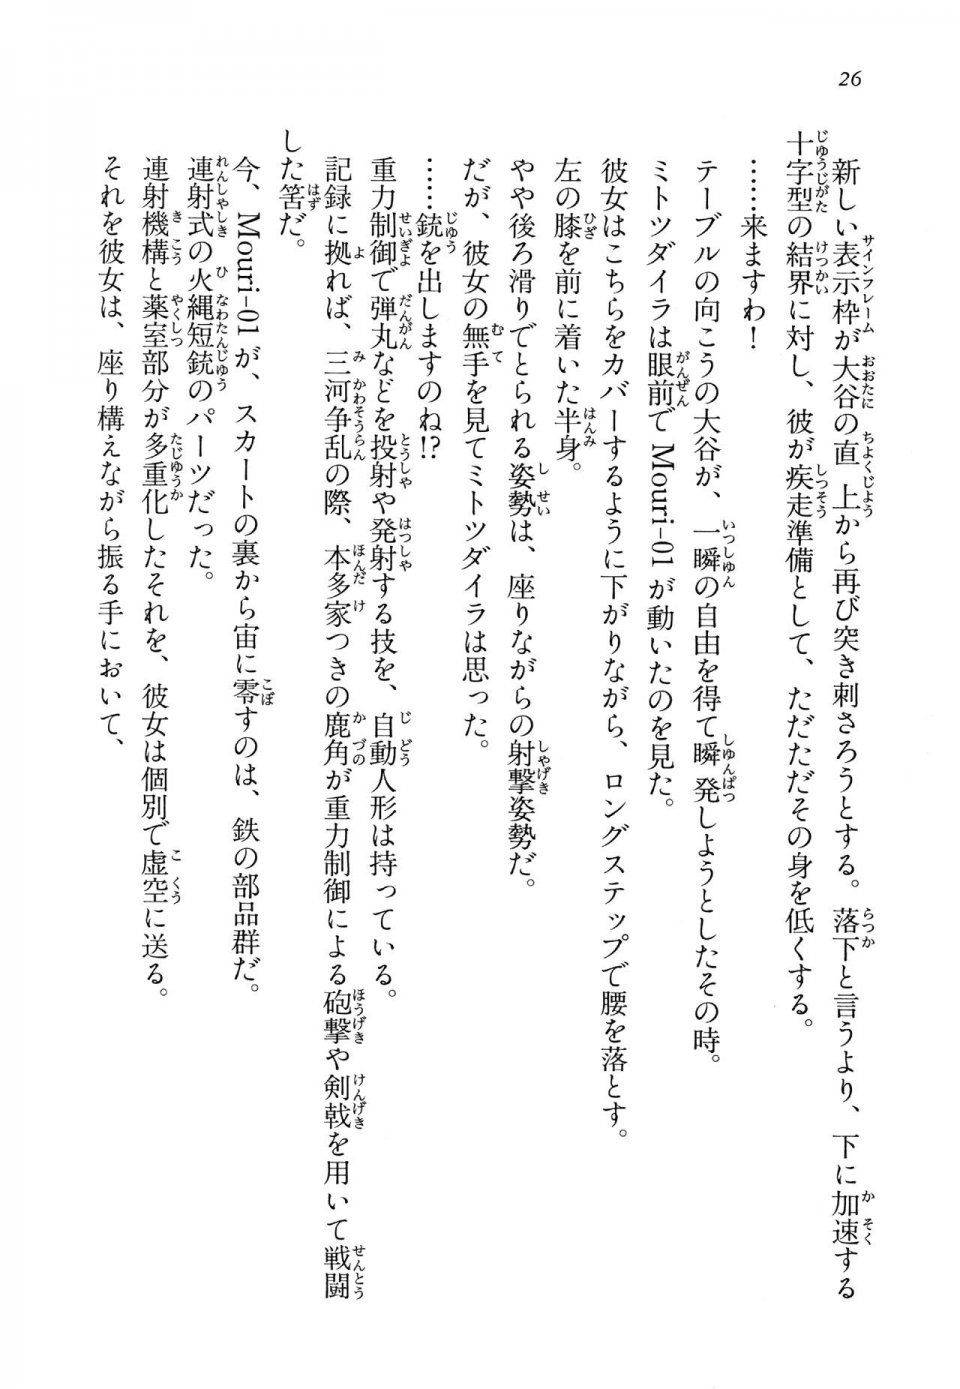 Kyoukai Senjou no Horizon LN Vol 14(6B) - Photo #26